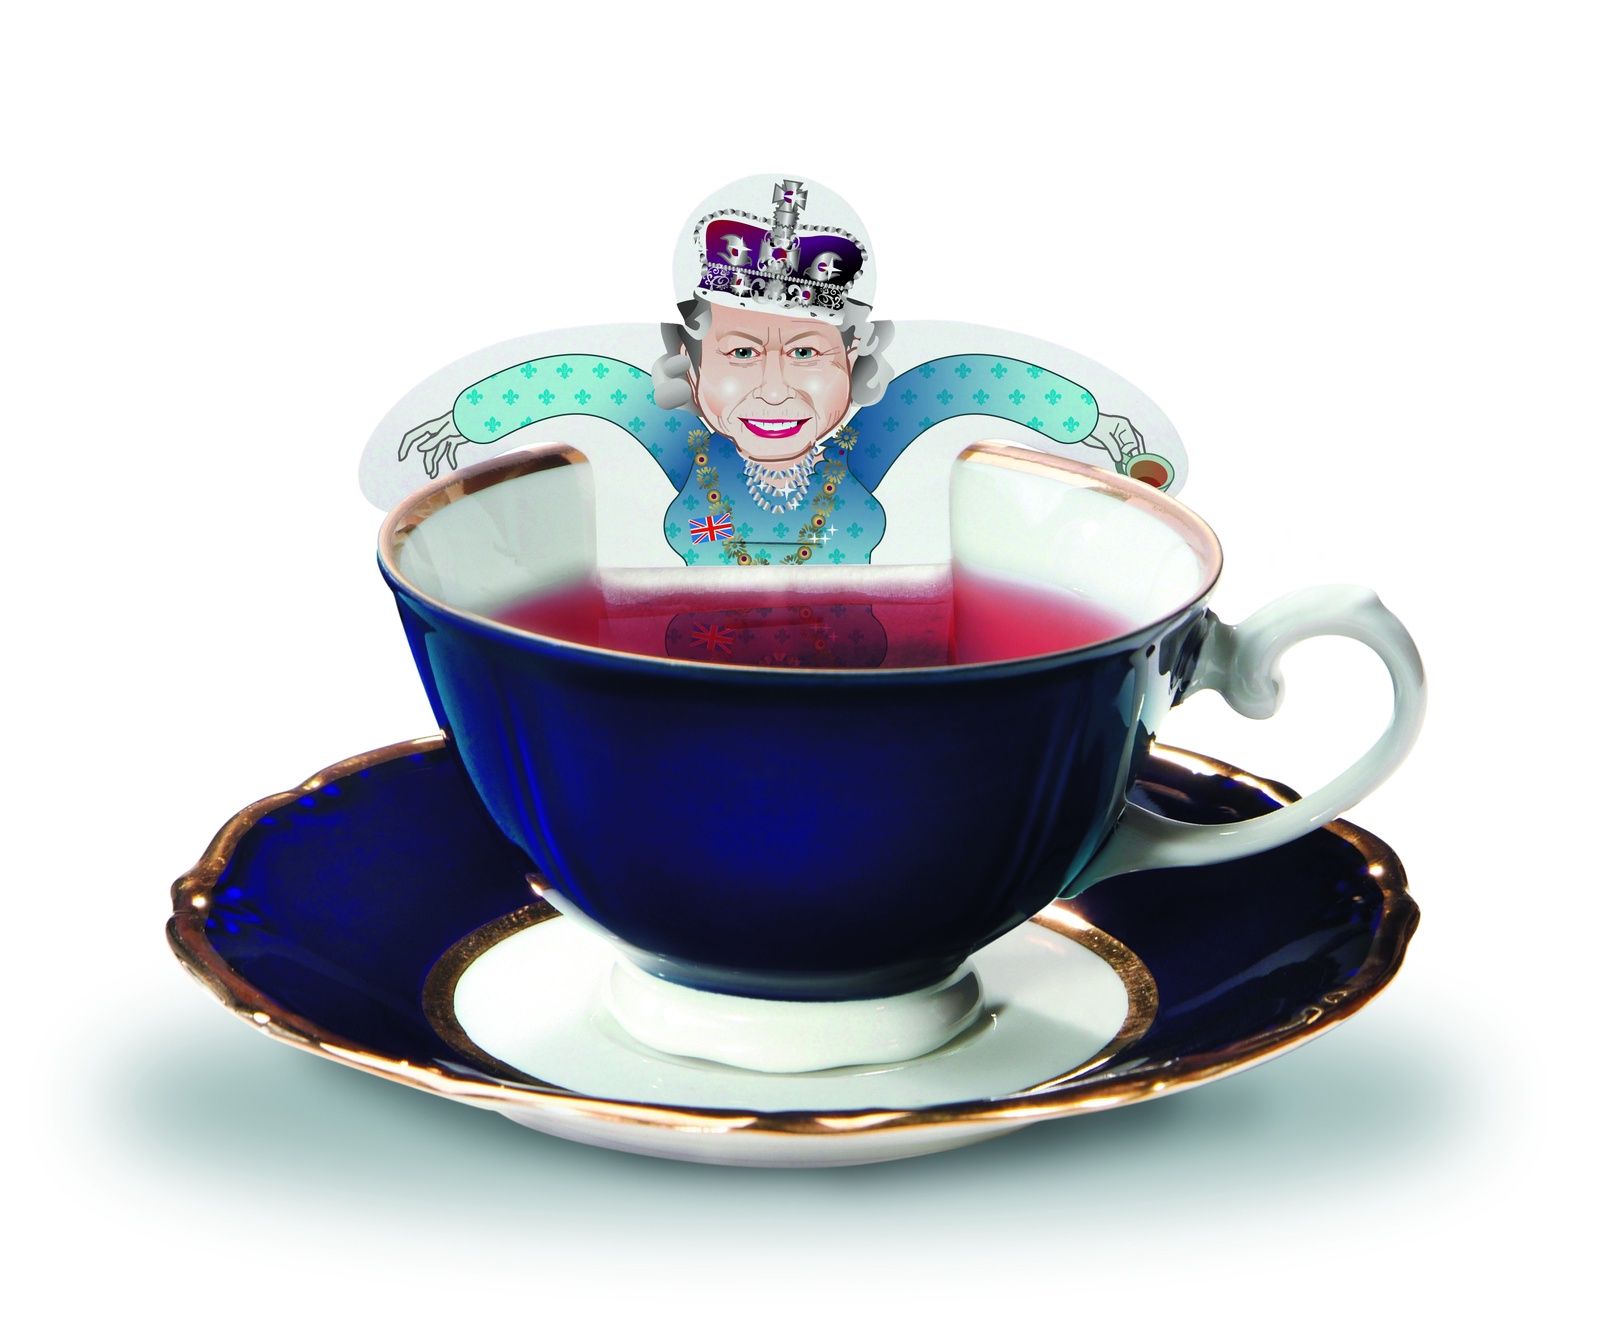   5-   Royal Tea